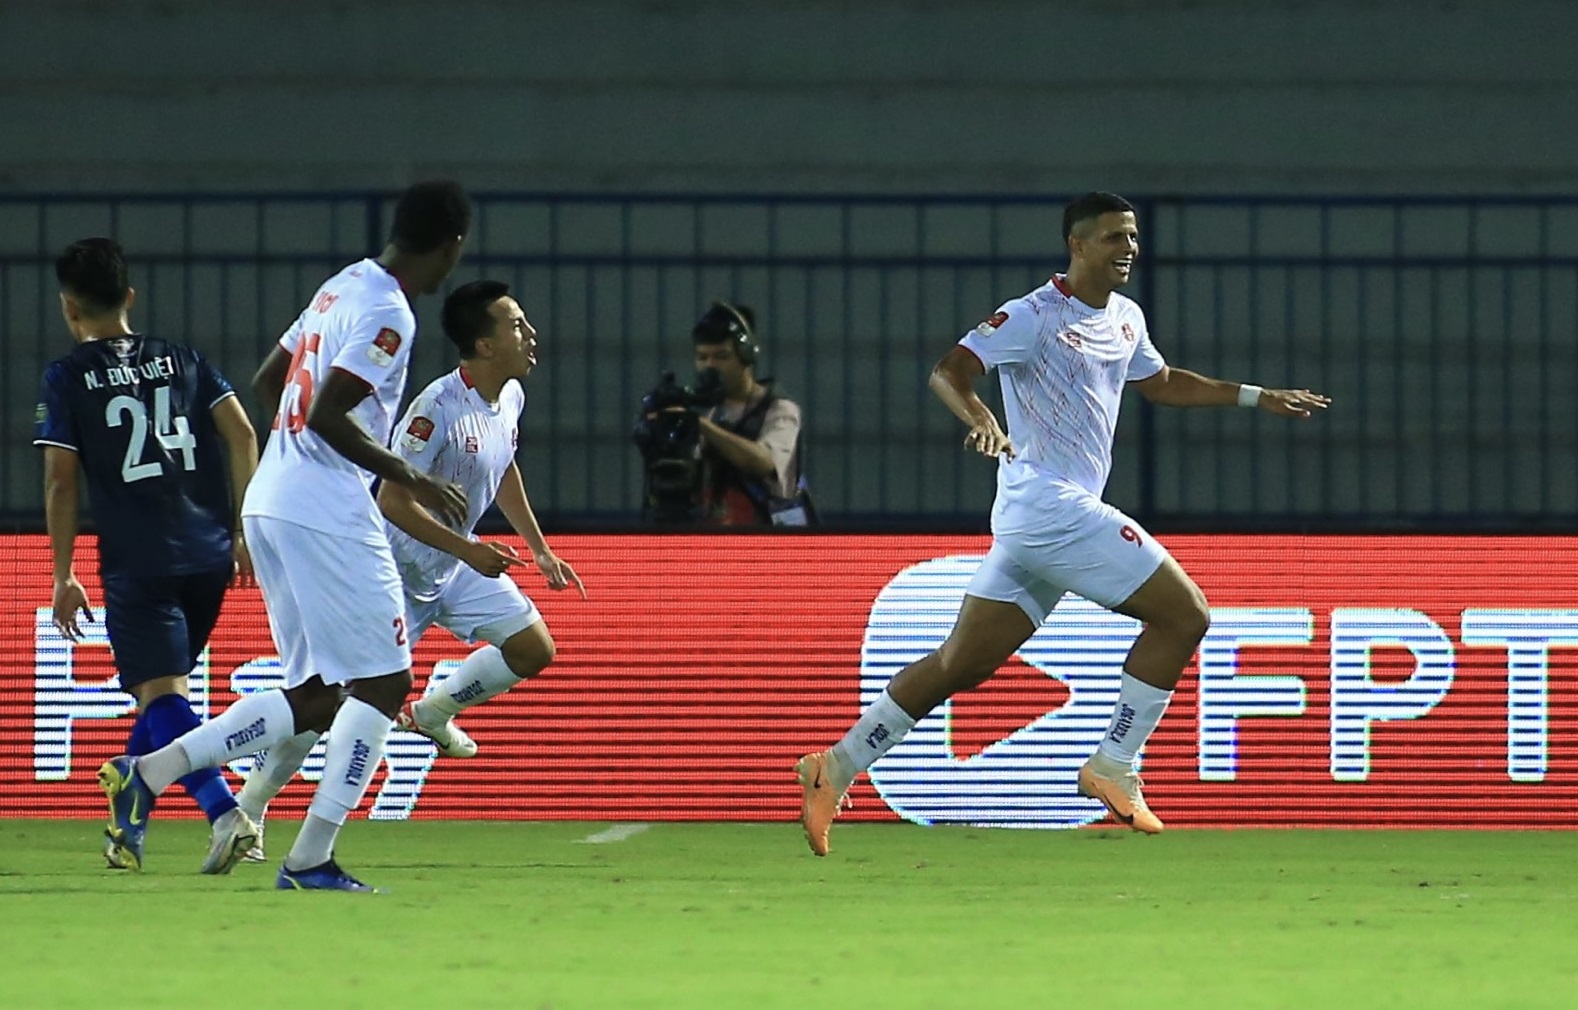 AFC Cup: Hải Phòng không còn đường lùi - Ảnh 1